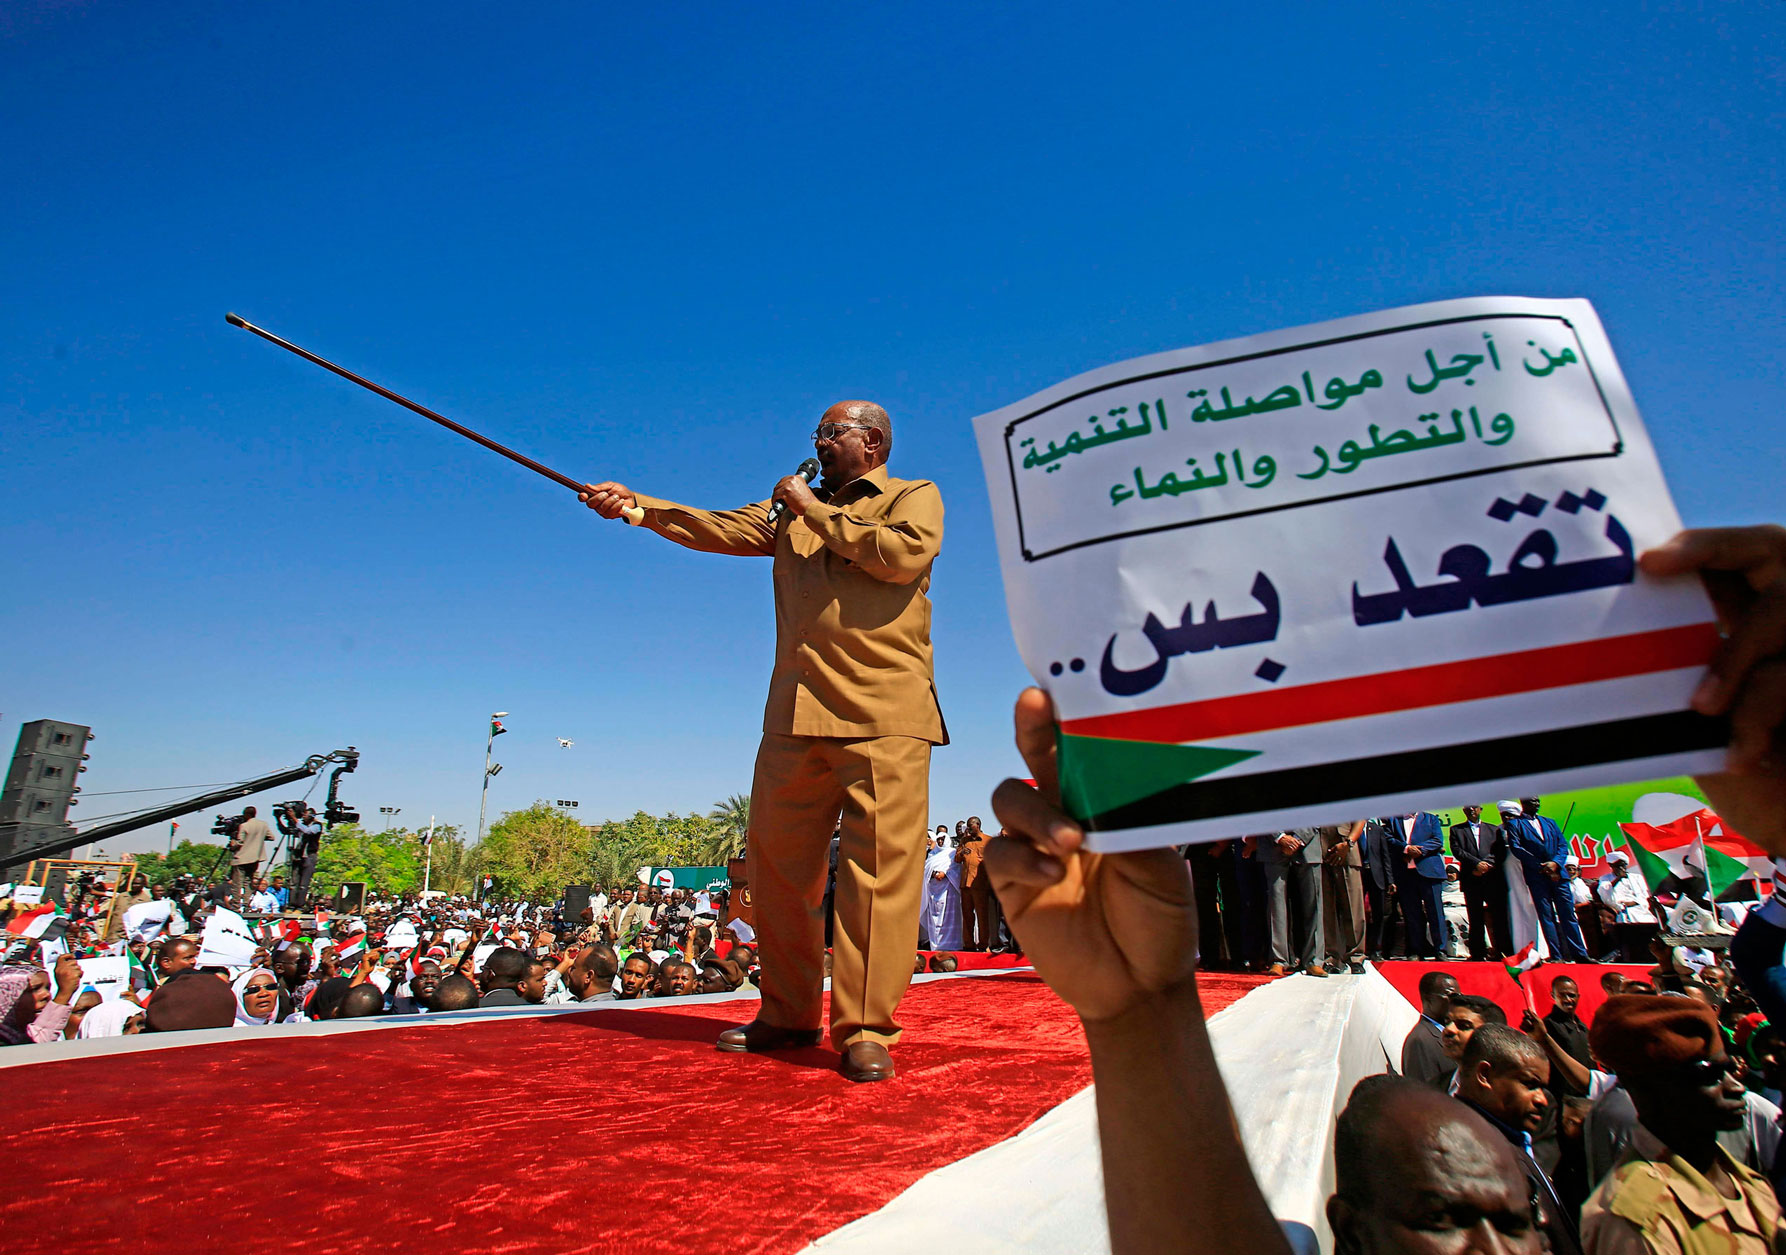 الرئيس السوداني عمر البشير يلوذ لخطابات شعبوية طلبا للدعم الشعبي في وجة مظاهرات تطالب برحيله